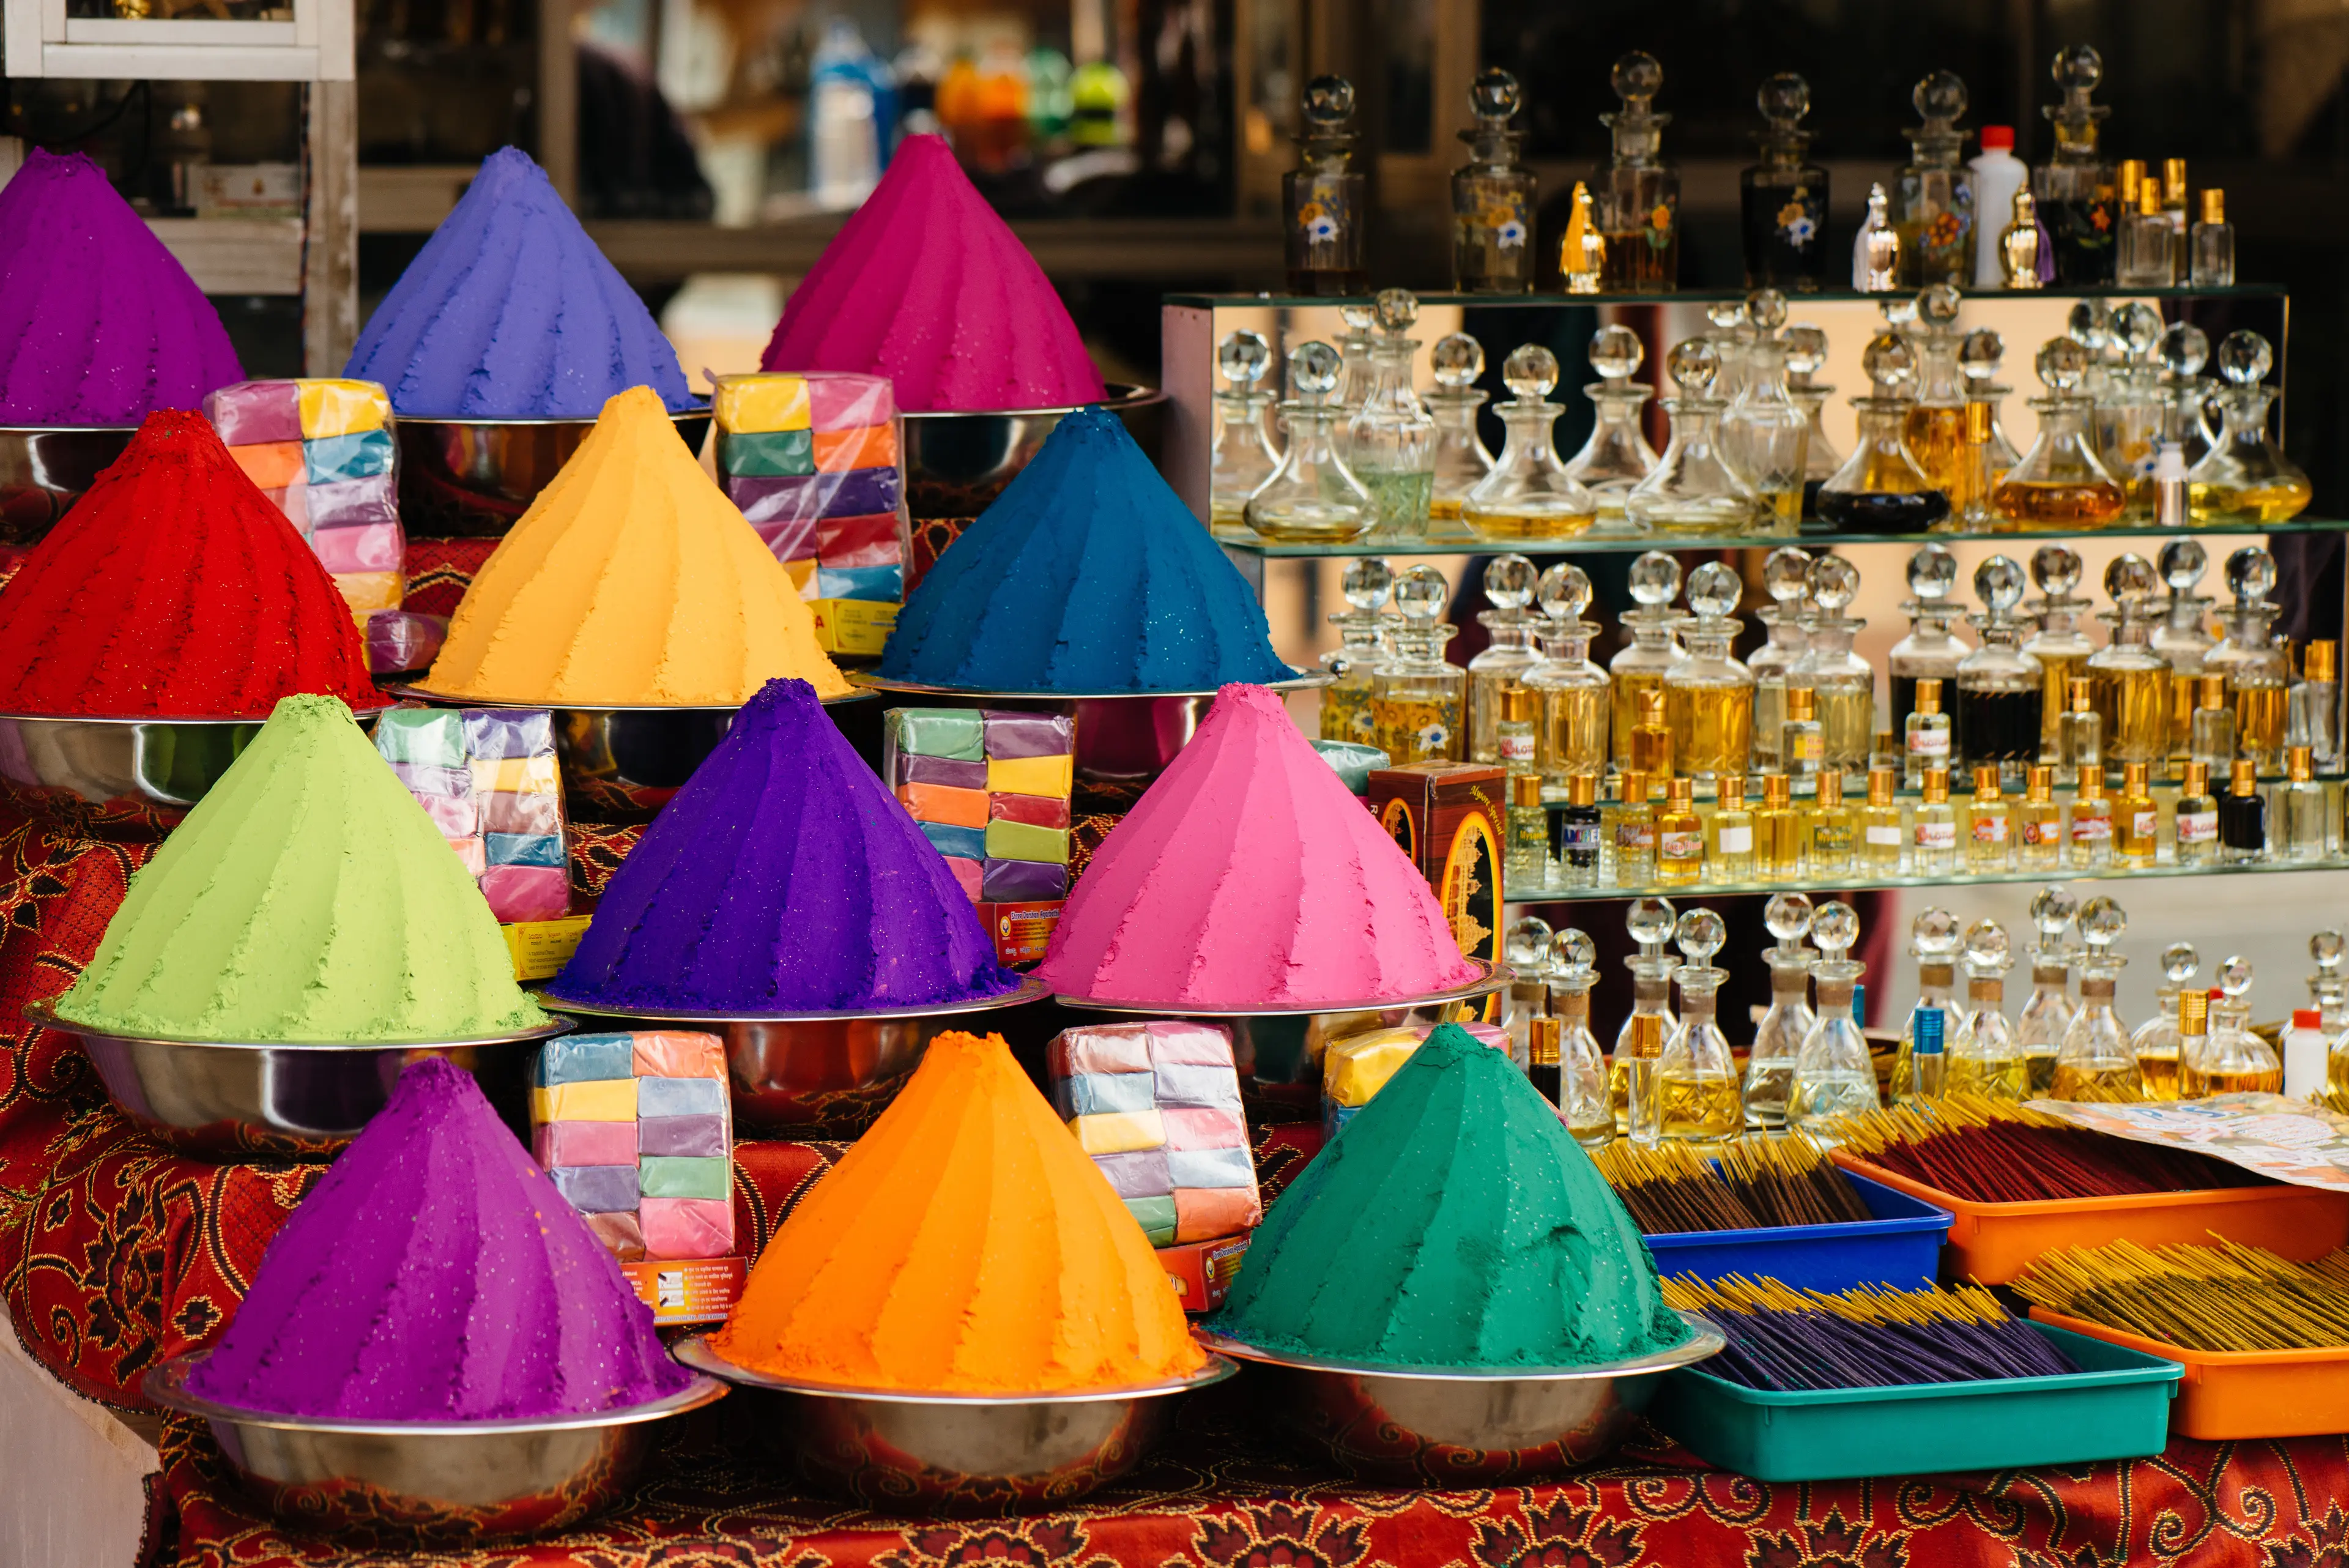 Colorful powders on display for Holi season